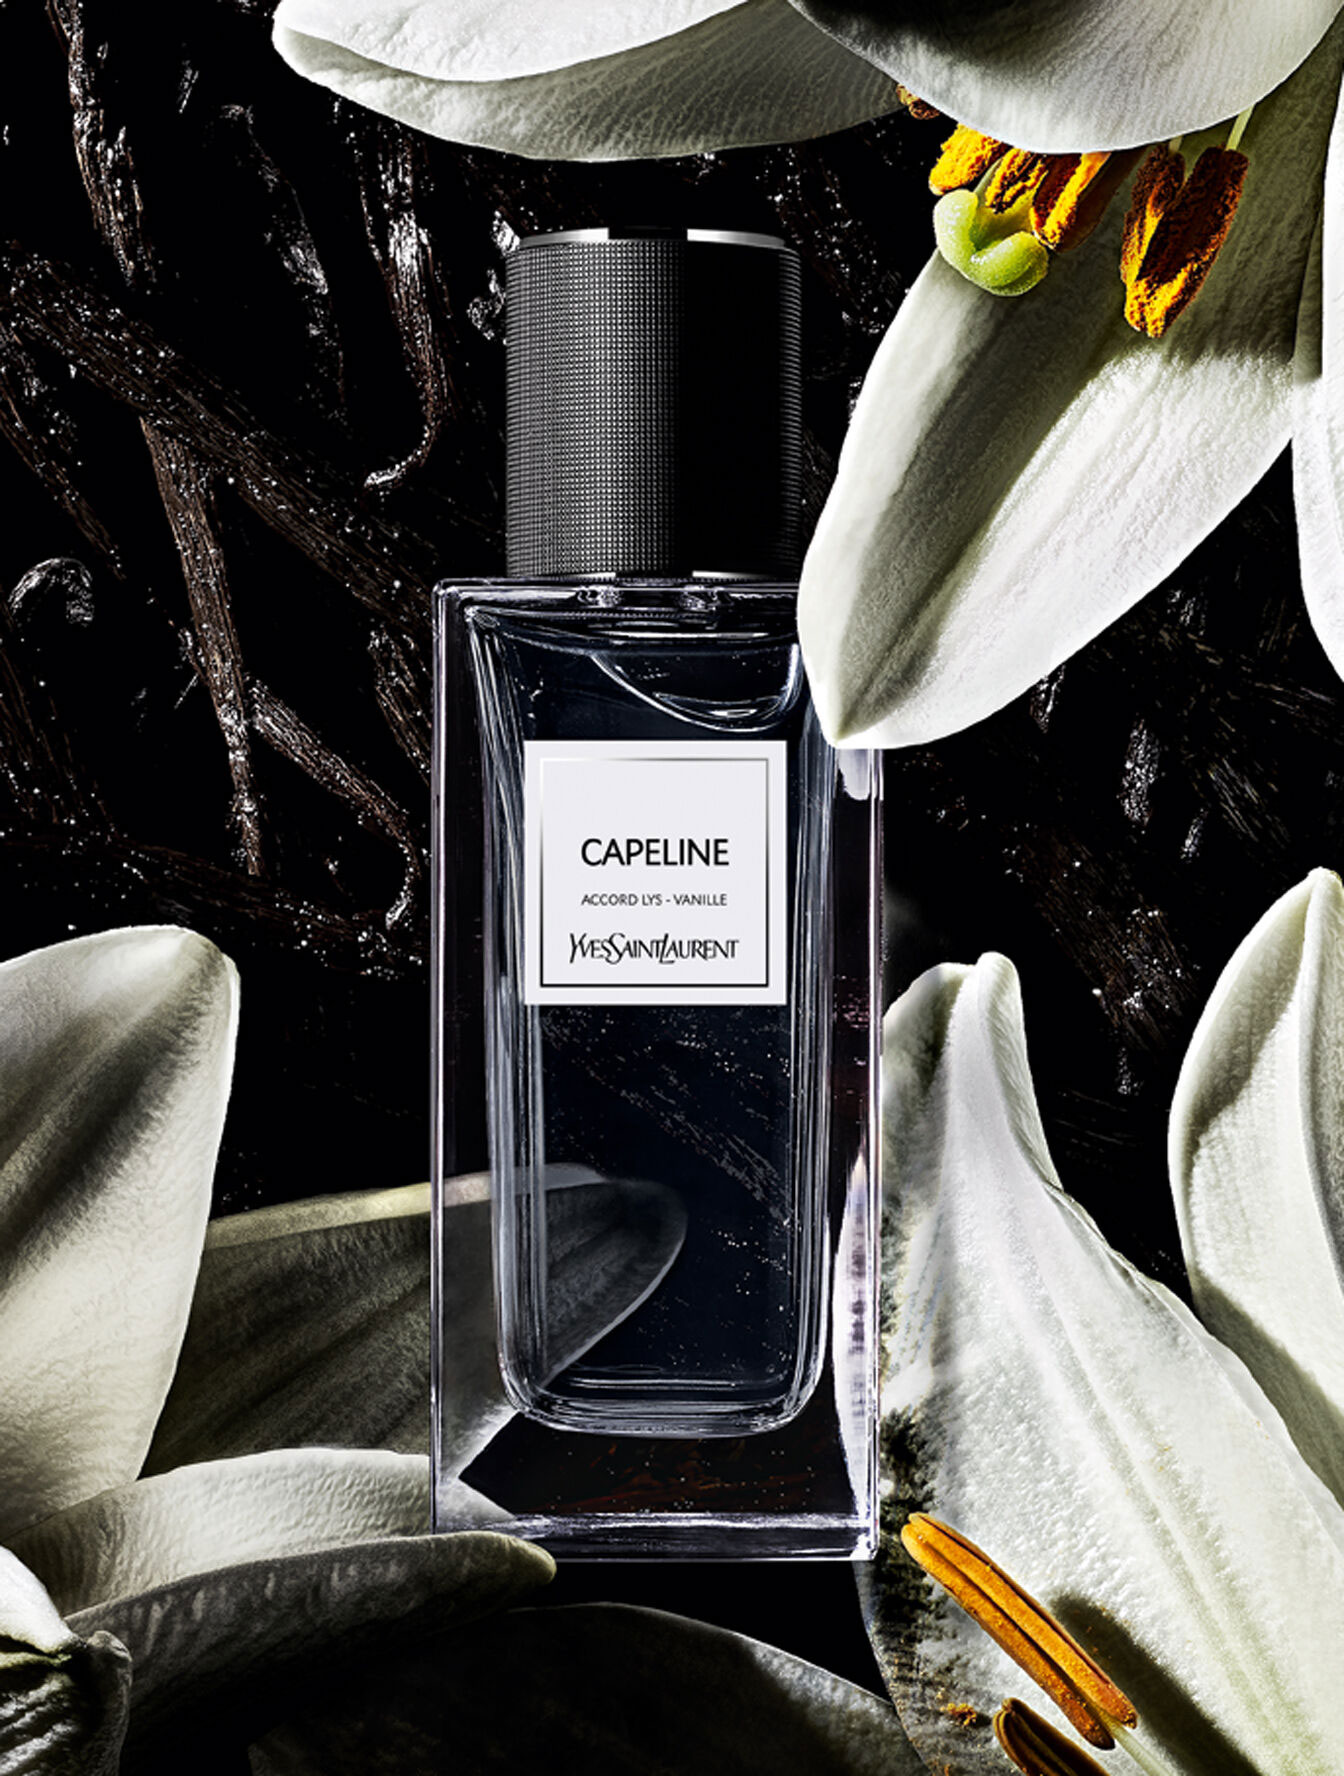 Yves Saint Laurent Capeline Le Vestiaire des Parfums Perfume Ad